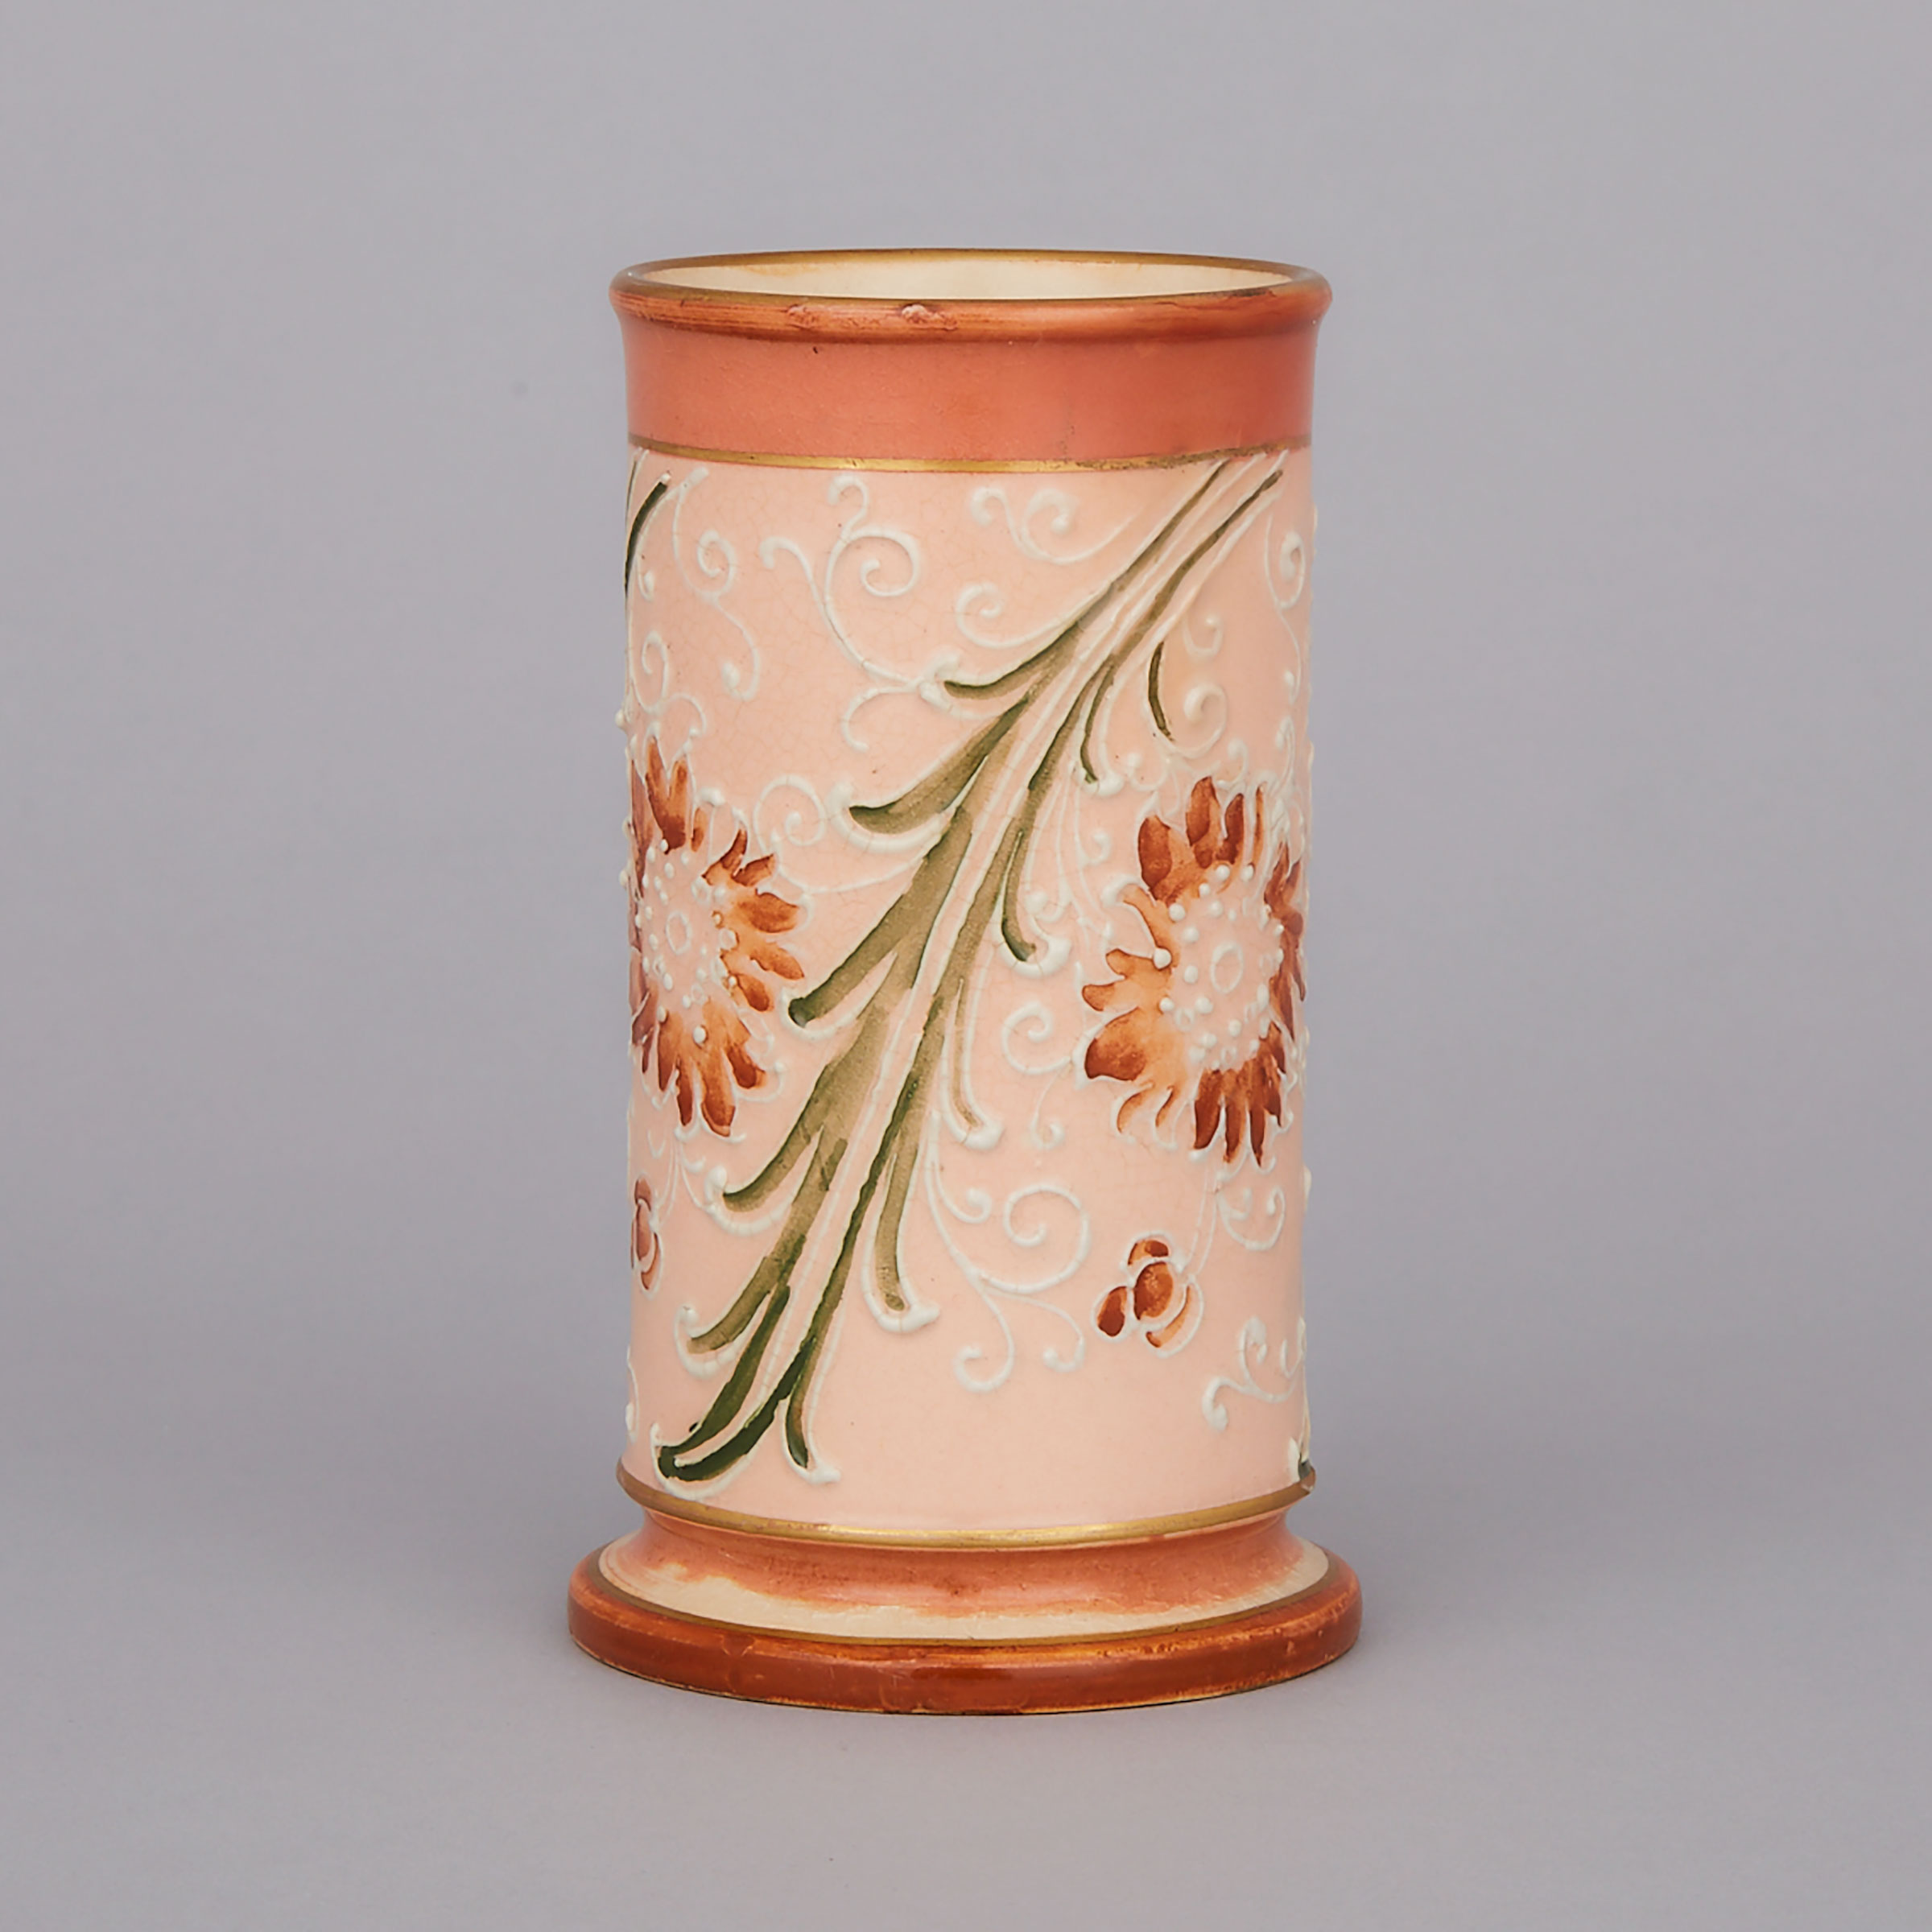 Macintyre Moorcroft Gesso Faience Vase, c.1900